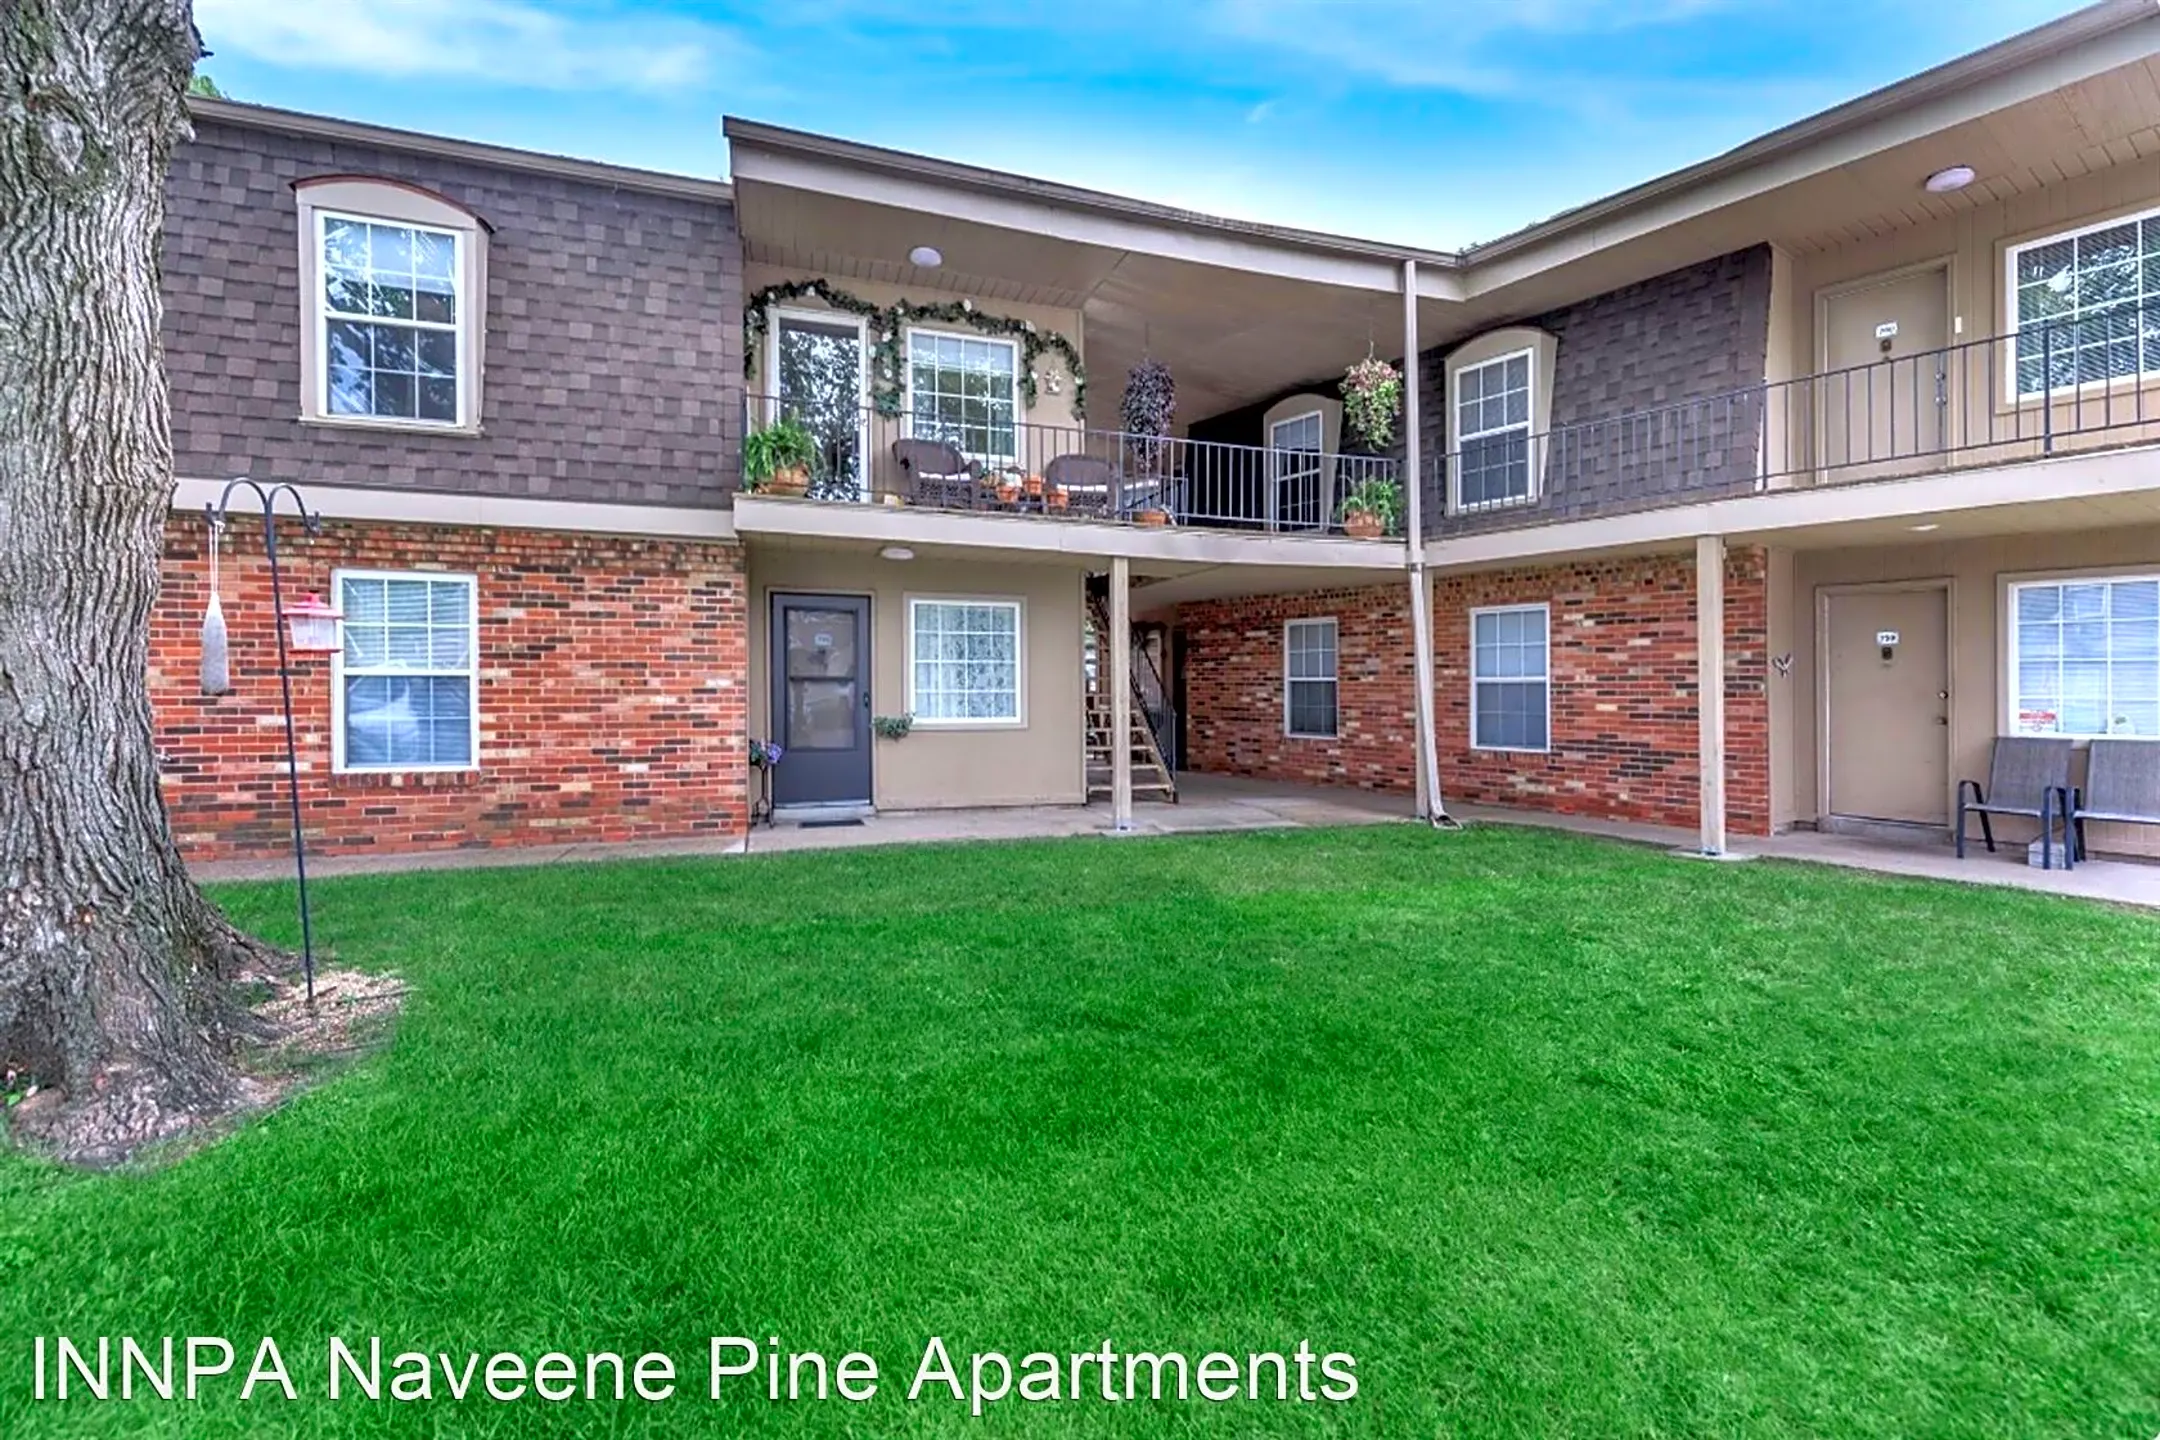 Building - Naveen Pine Apartments - Evansville, IN